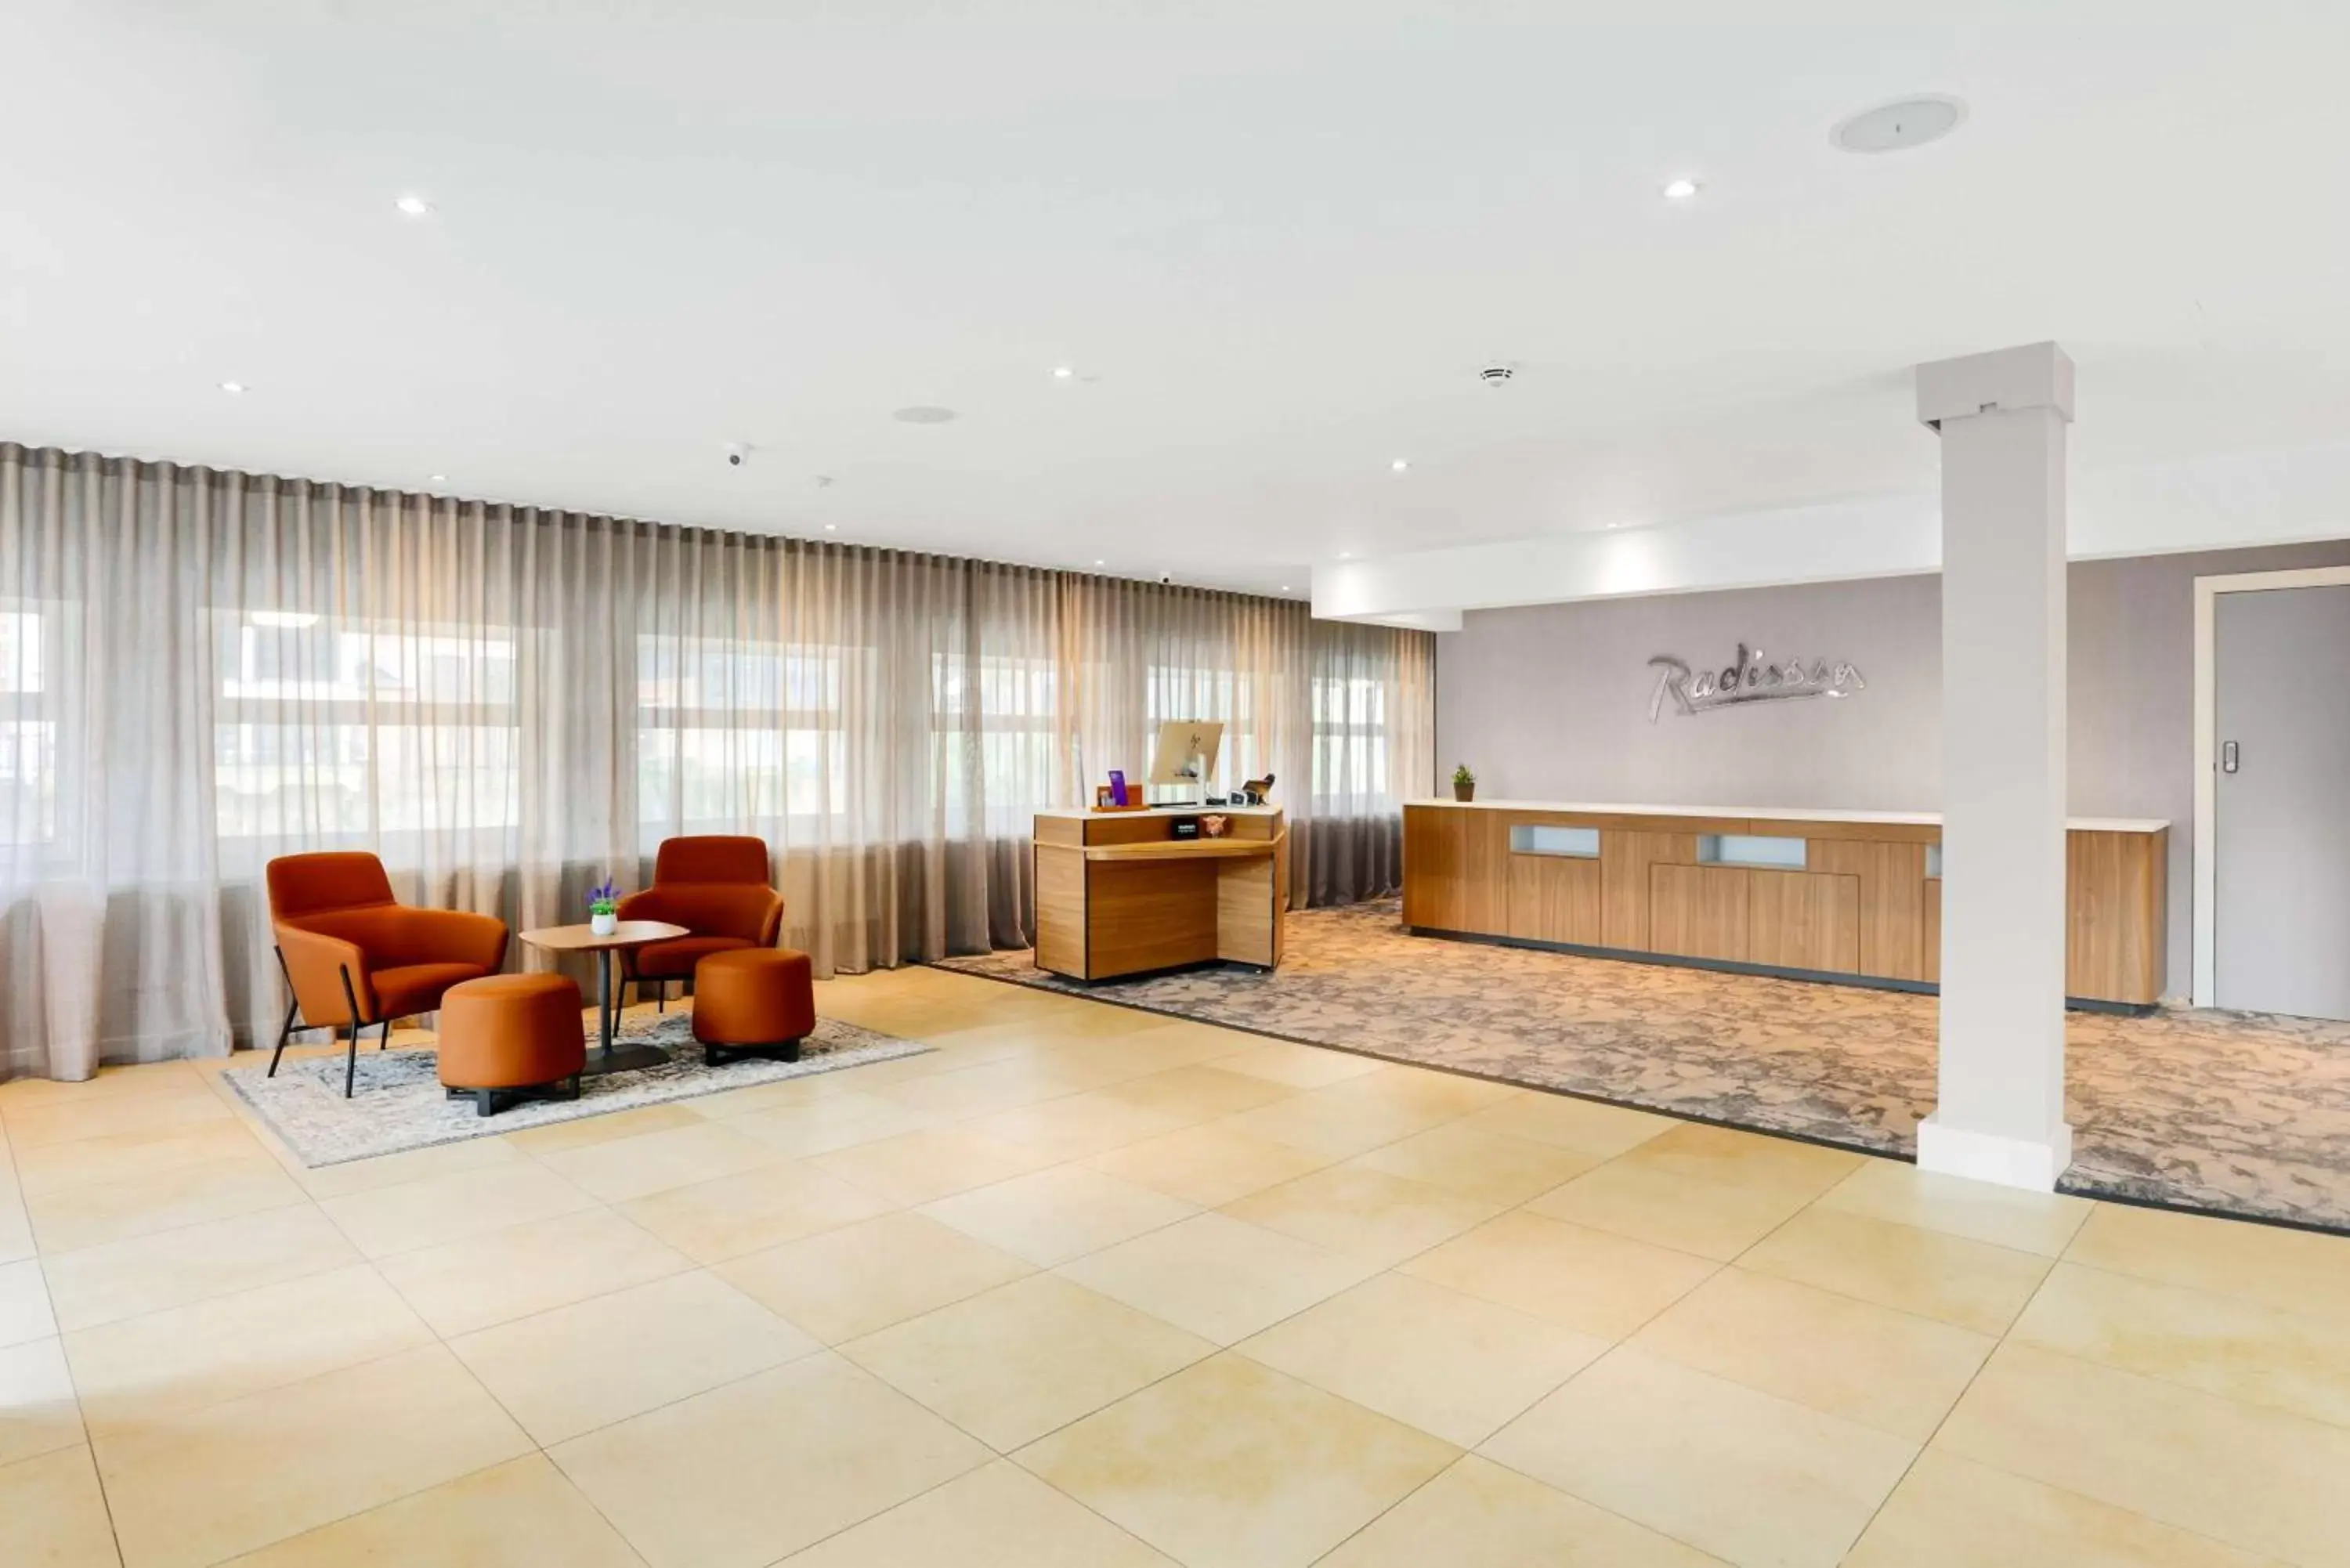 Lobby or reception, Lobby/Reception in Radisson Hotel York